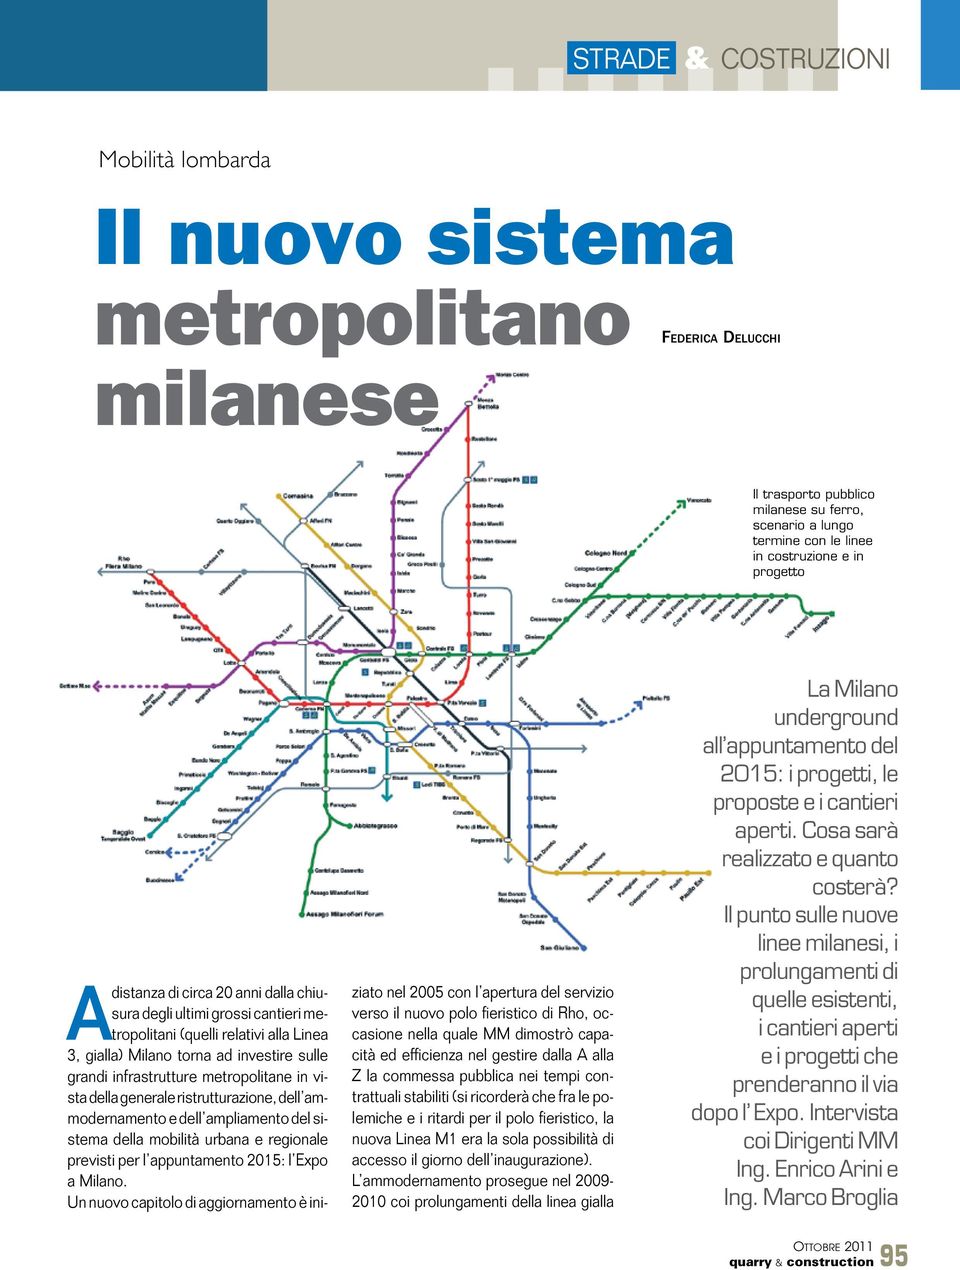 metropolitane in vista della generale ristrutturazione, dell ammodernamento e dell ampliamento del sistema della mobilità urbana e regionale previsti per l appuntamento 2015: l Expo a Milano.